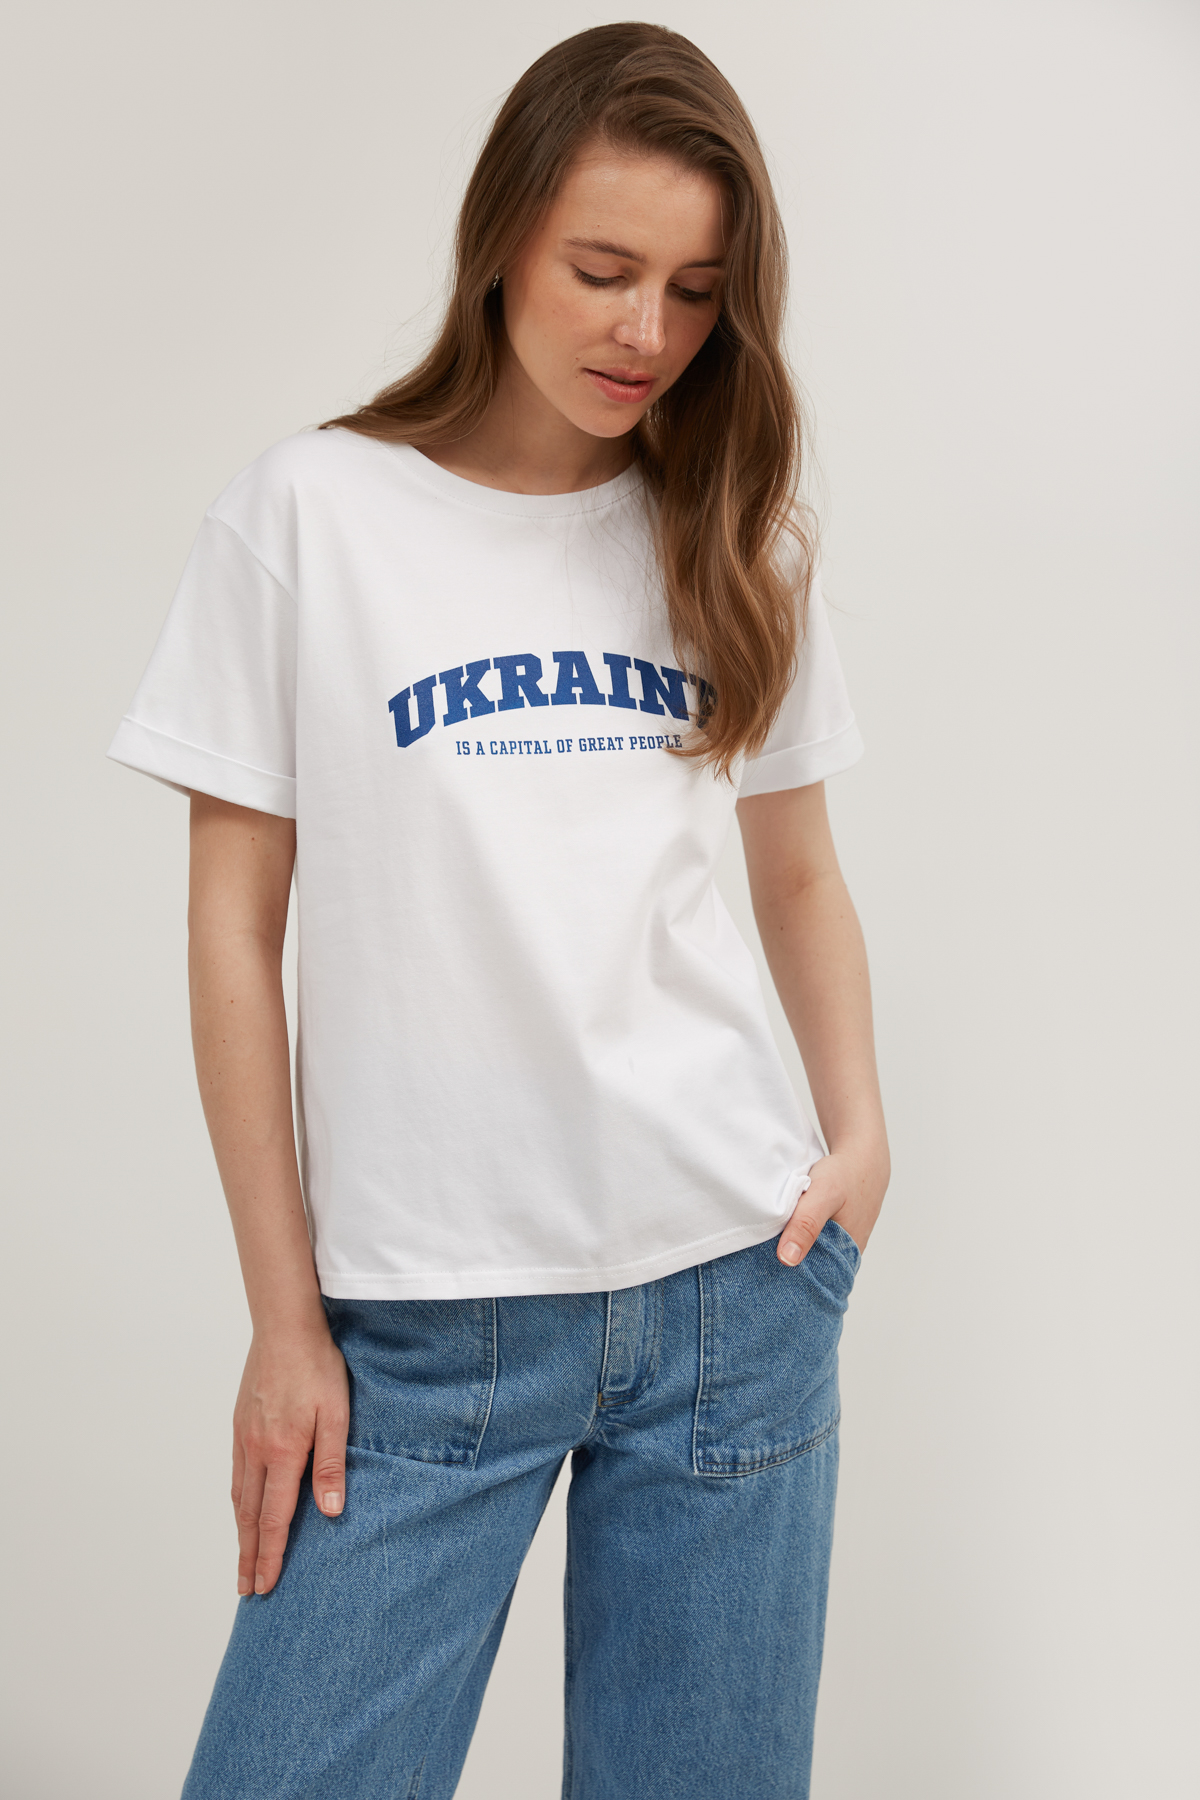 Белая широкая футболка с надписью "Ukraine", фото 2